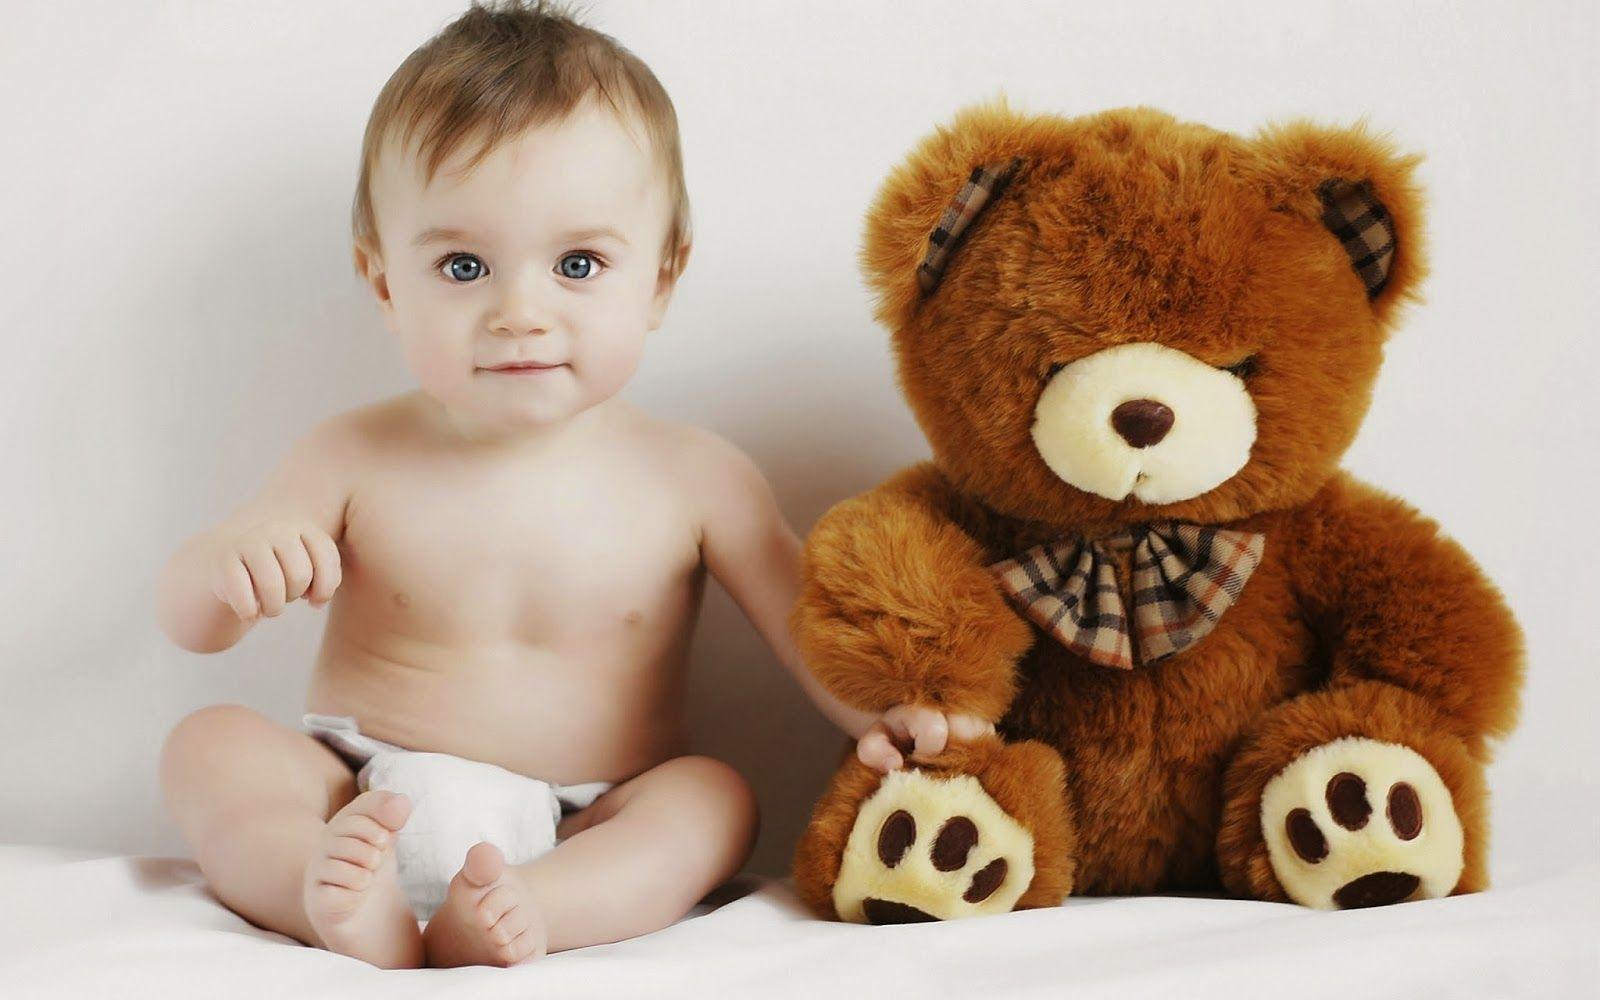 Cute Teddy Bear Picture HD Image Free Download desktop Wallpaper